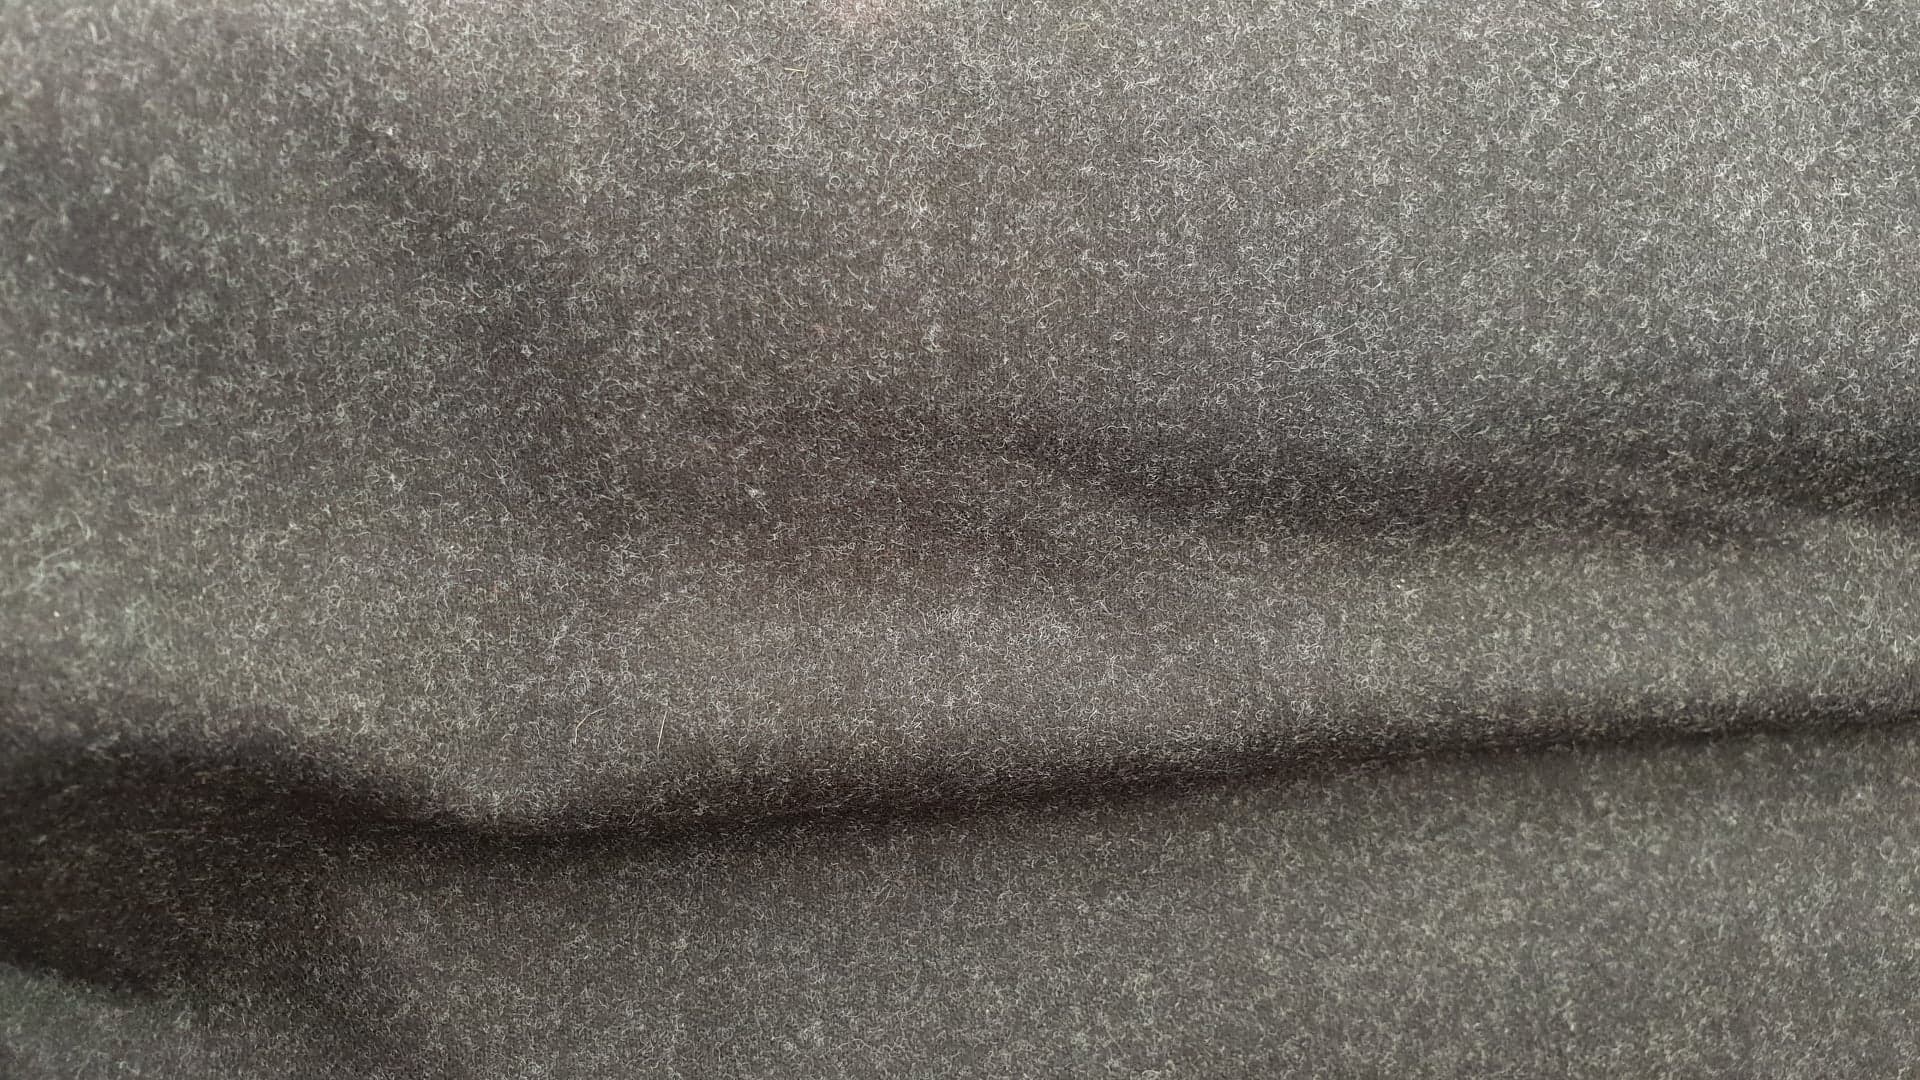 Wool twill-dark gray